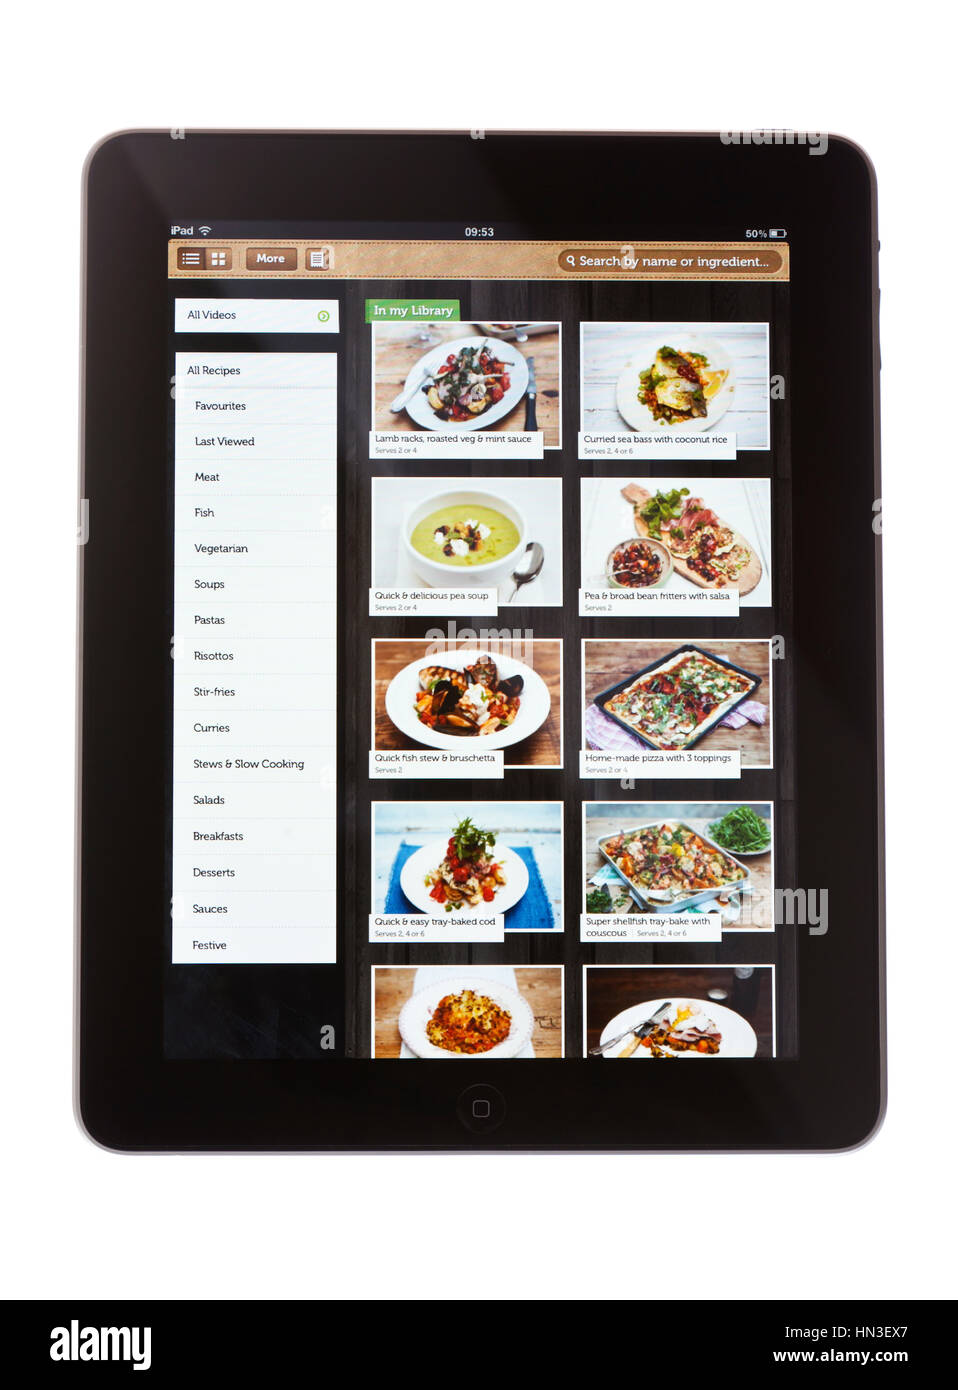 BATH, Großbritannien - 9. November 2011: Ein Apple iPad, vor einem weißen Hintergrund, Anzeige von Jamie Oliver Rezept ca. Illustrated Rezepte nach der britischen che Stockfoto